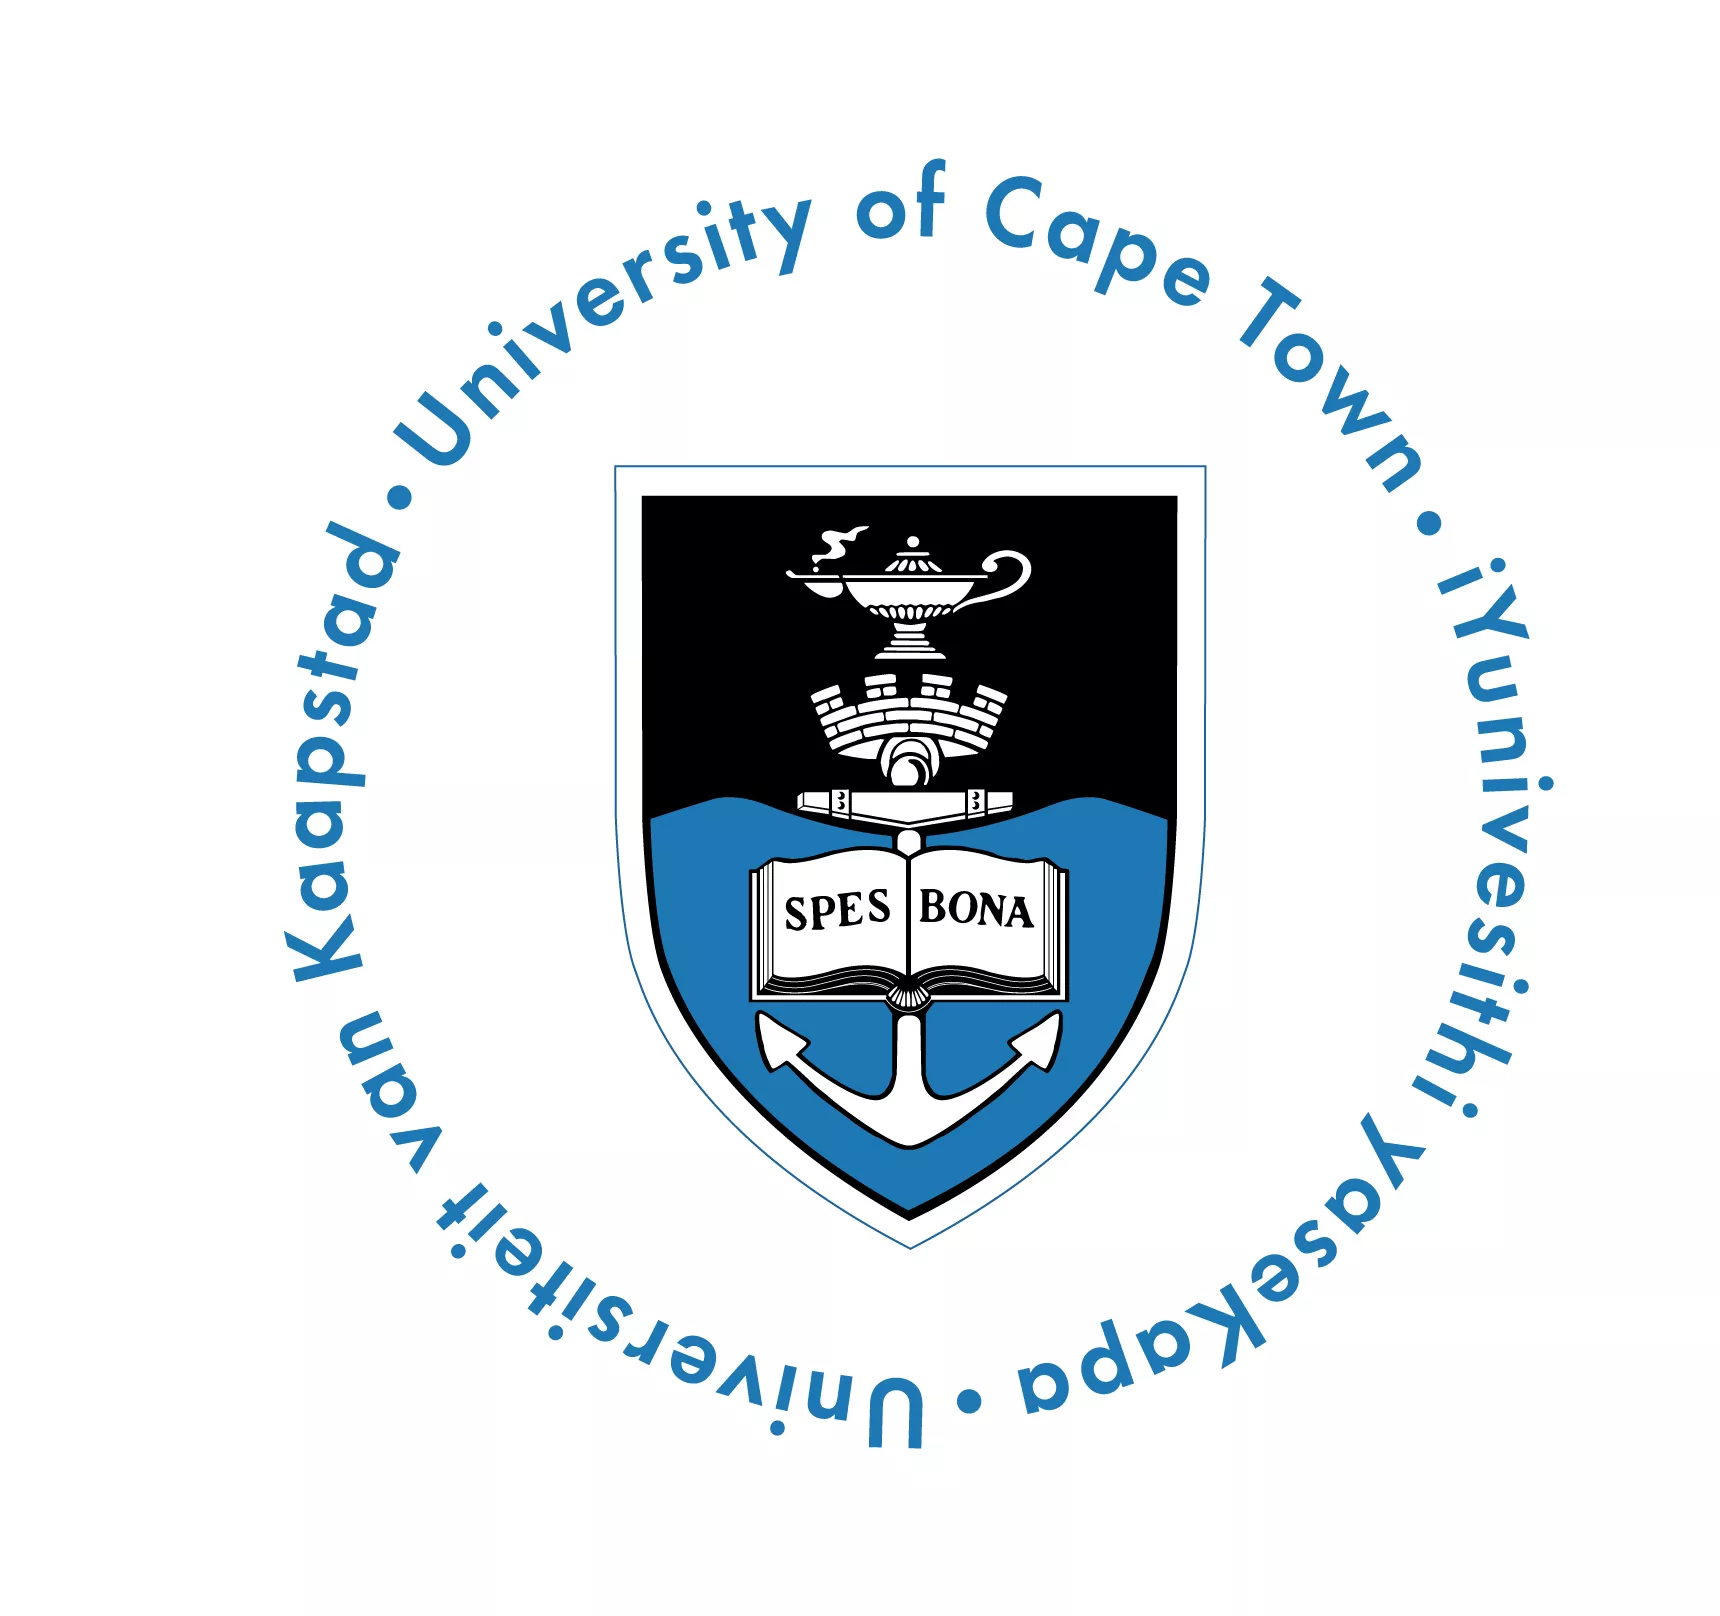 Bourses de master 2020/2021 pour étudiants africains de l’Institut des arts créatifs de l’Université du Cap (ICA) – Afrique du Sud